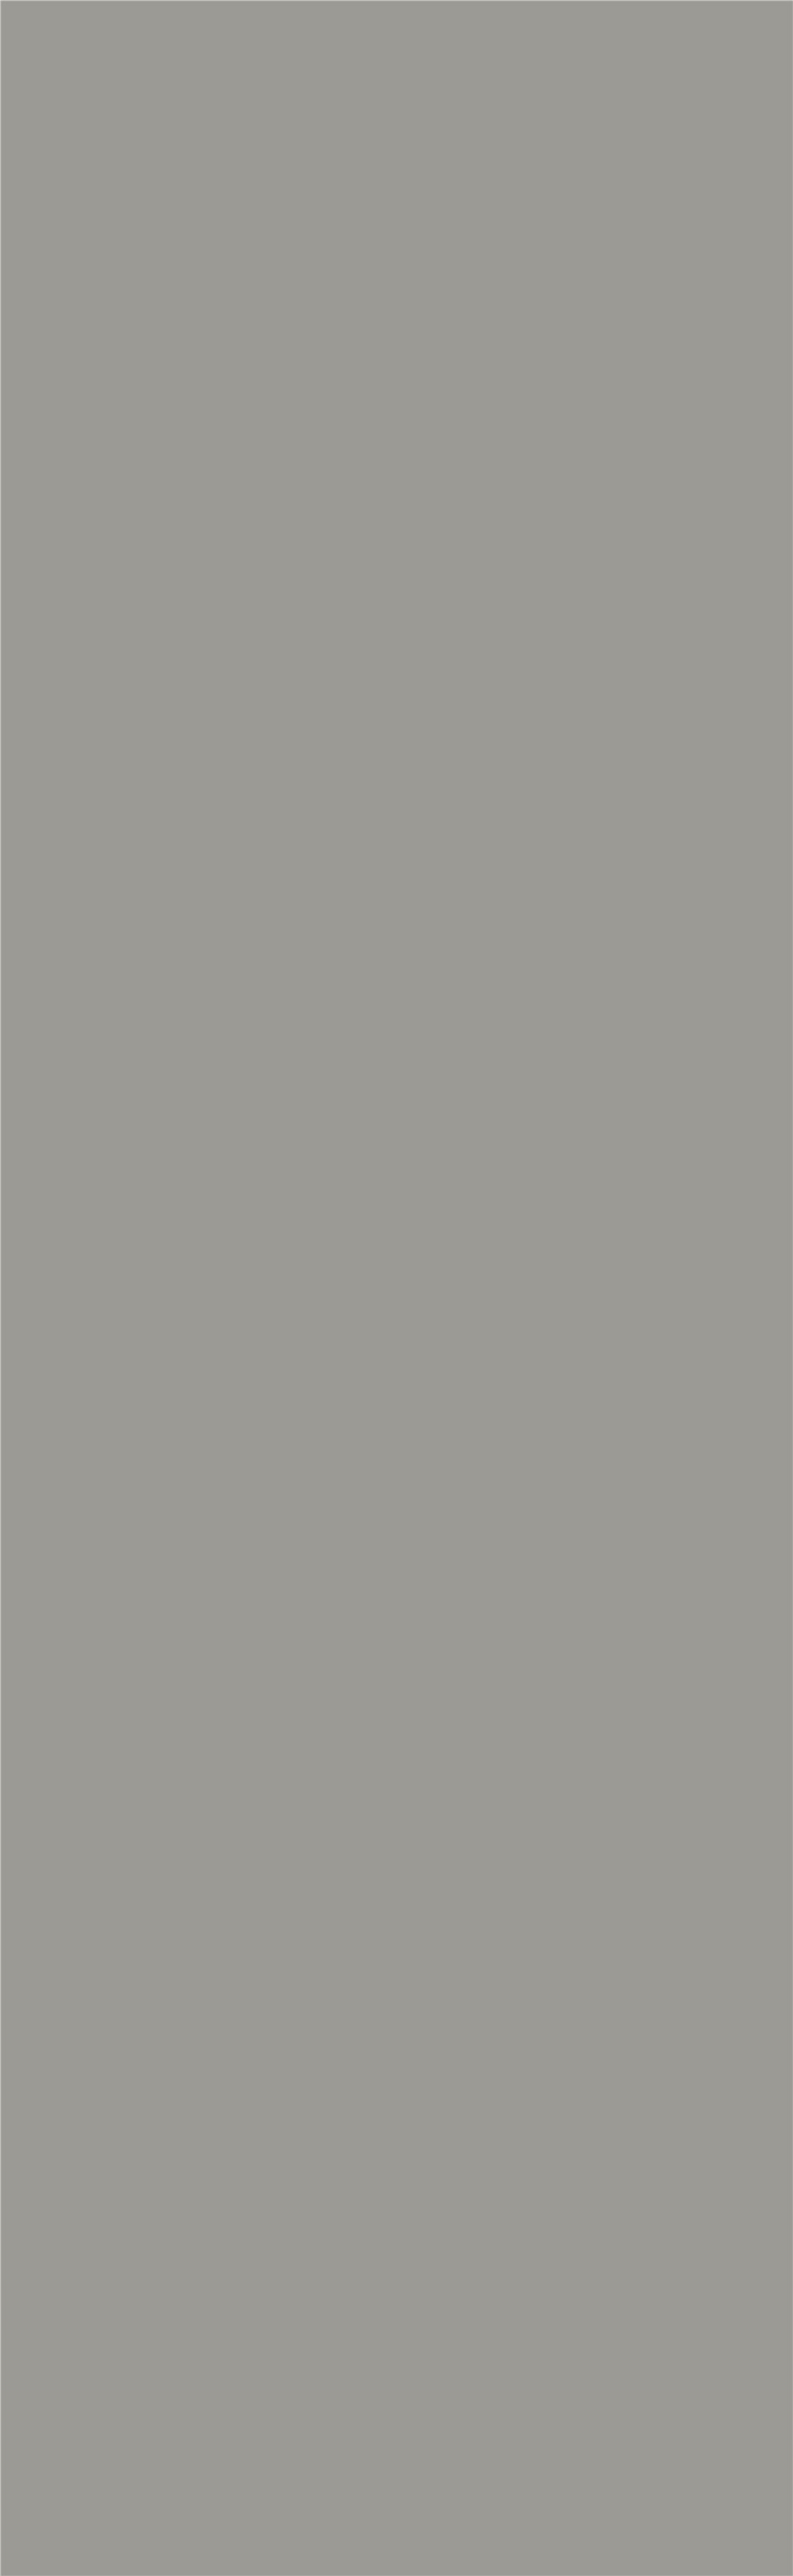 NF-2LB260845-006银蚀灰纯色瓷砖